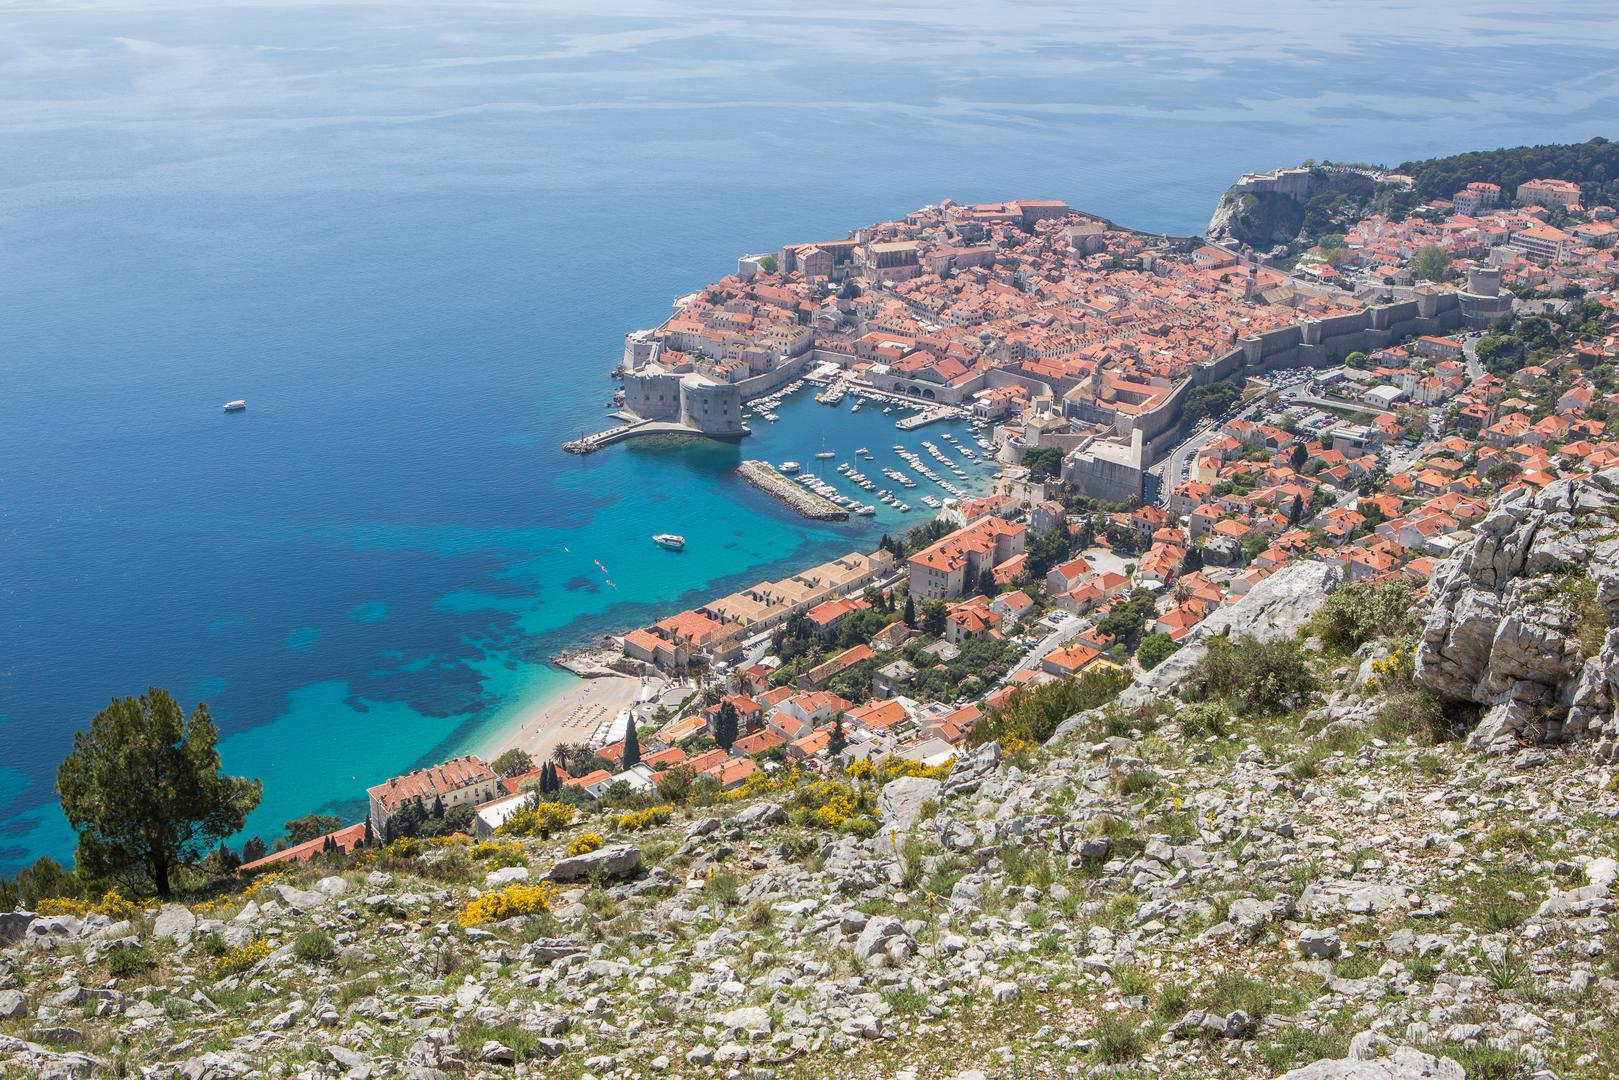 Iako je mnogo posjetitelja dubljeg
džepa, u Dubrovniku rado dočekuju i